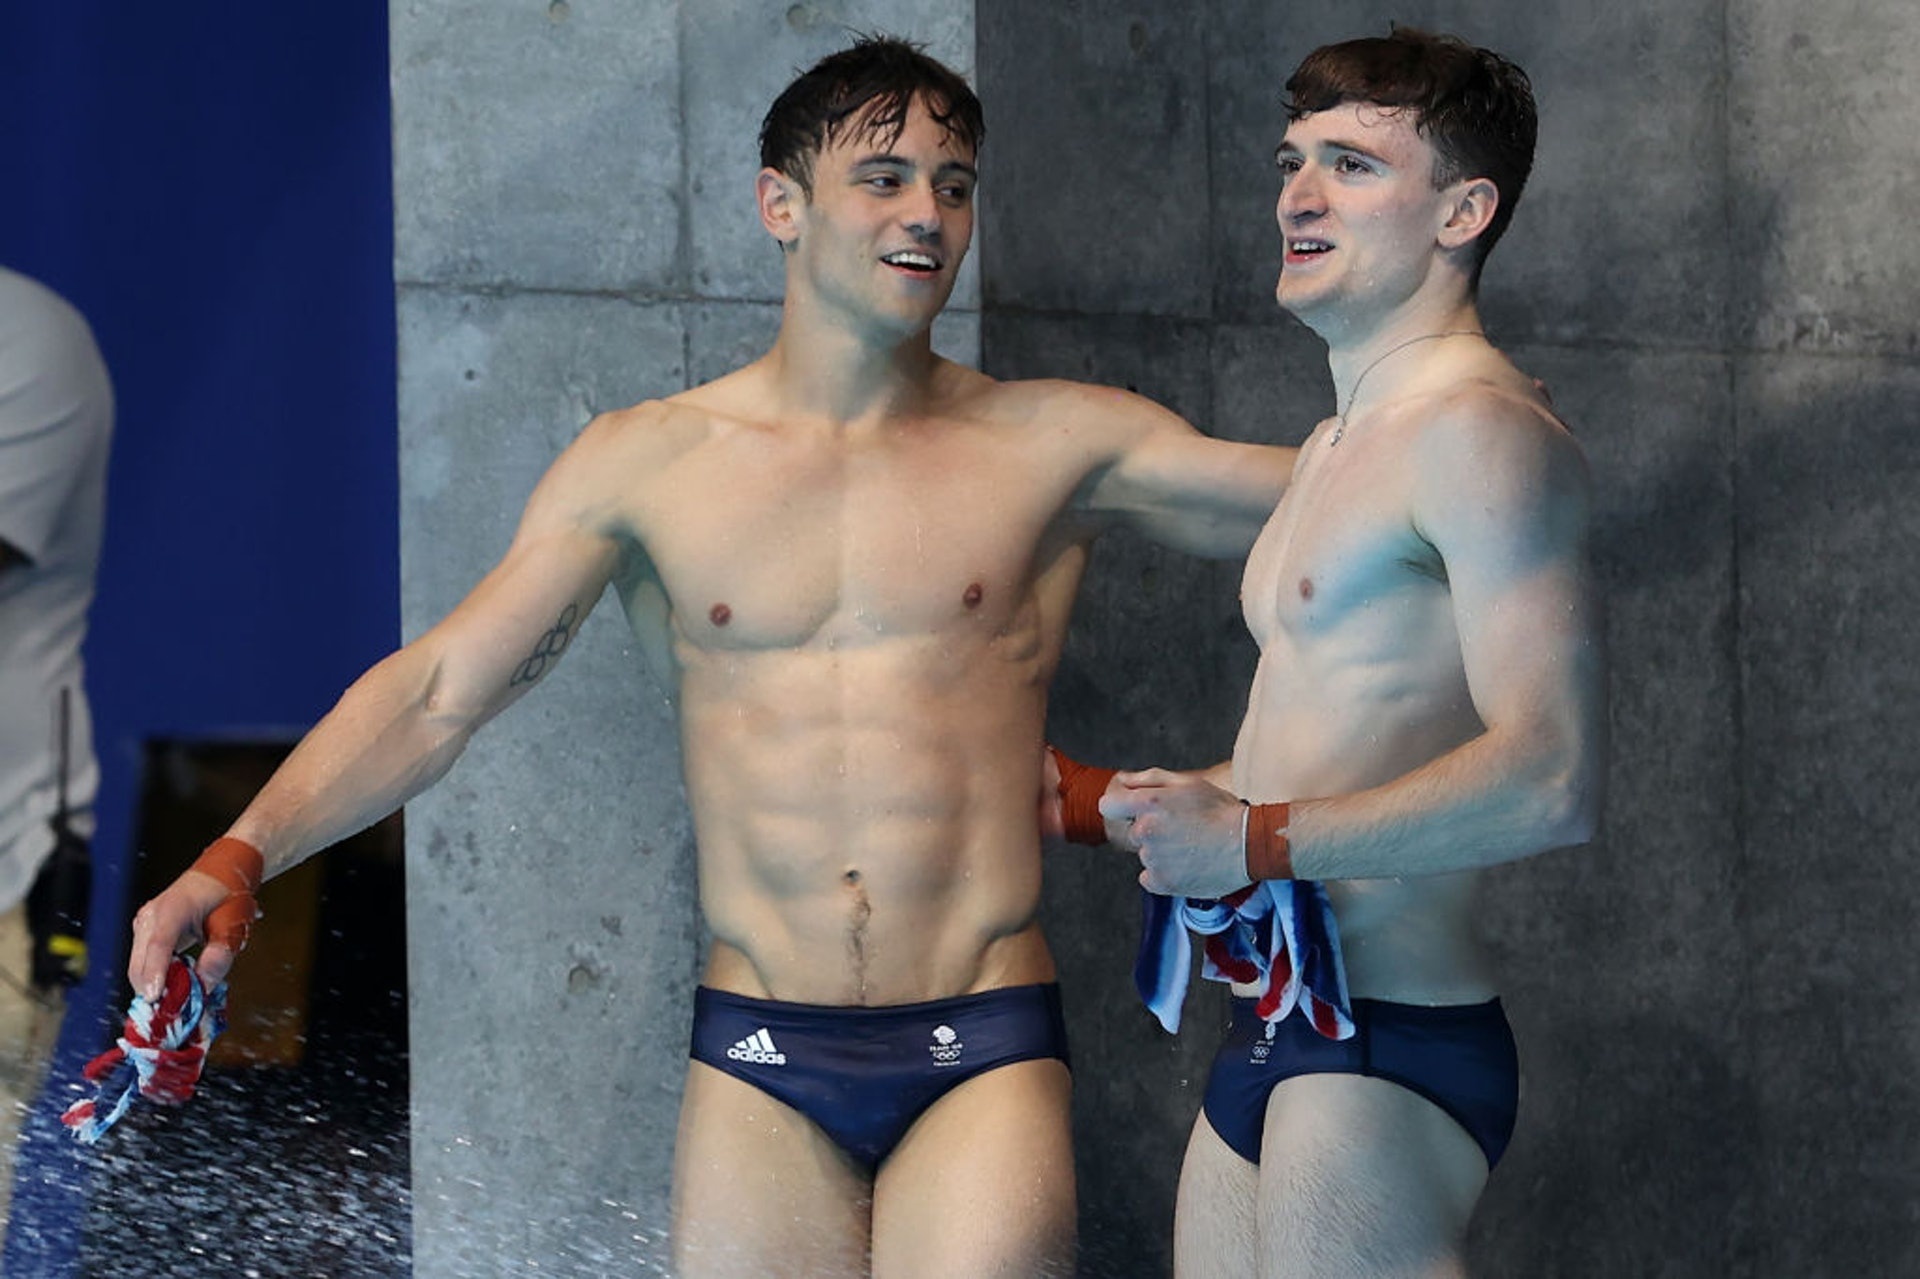 Piers lên tiếng châm biếm trang phục của vận động viên bơi lội Tom Daley và Matty Lee tại Olympic Tokyo 2020 khi họ mặc đơn độc một chiếc quần chip.